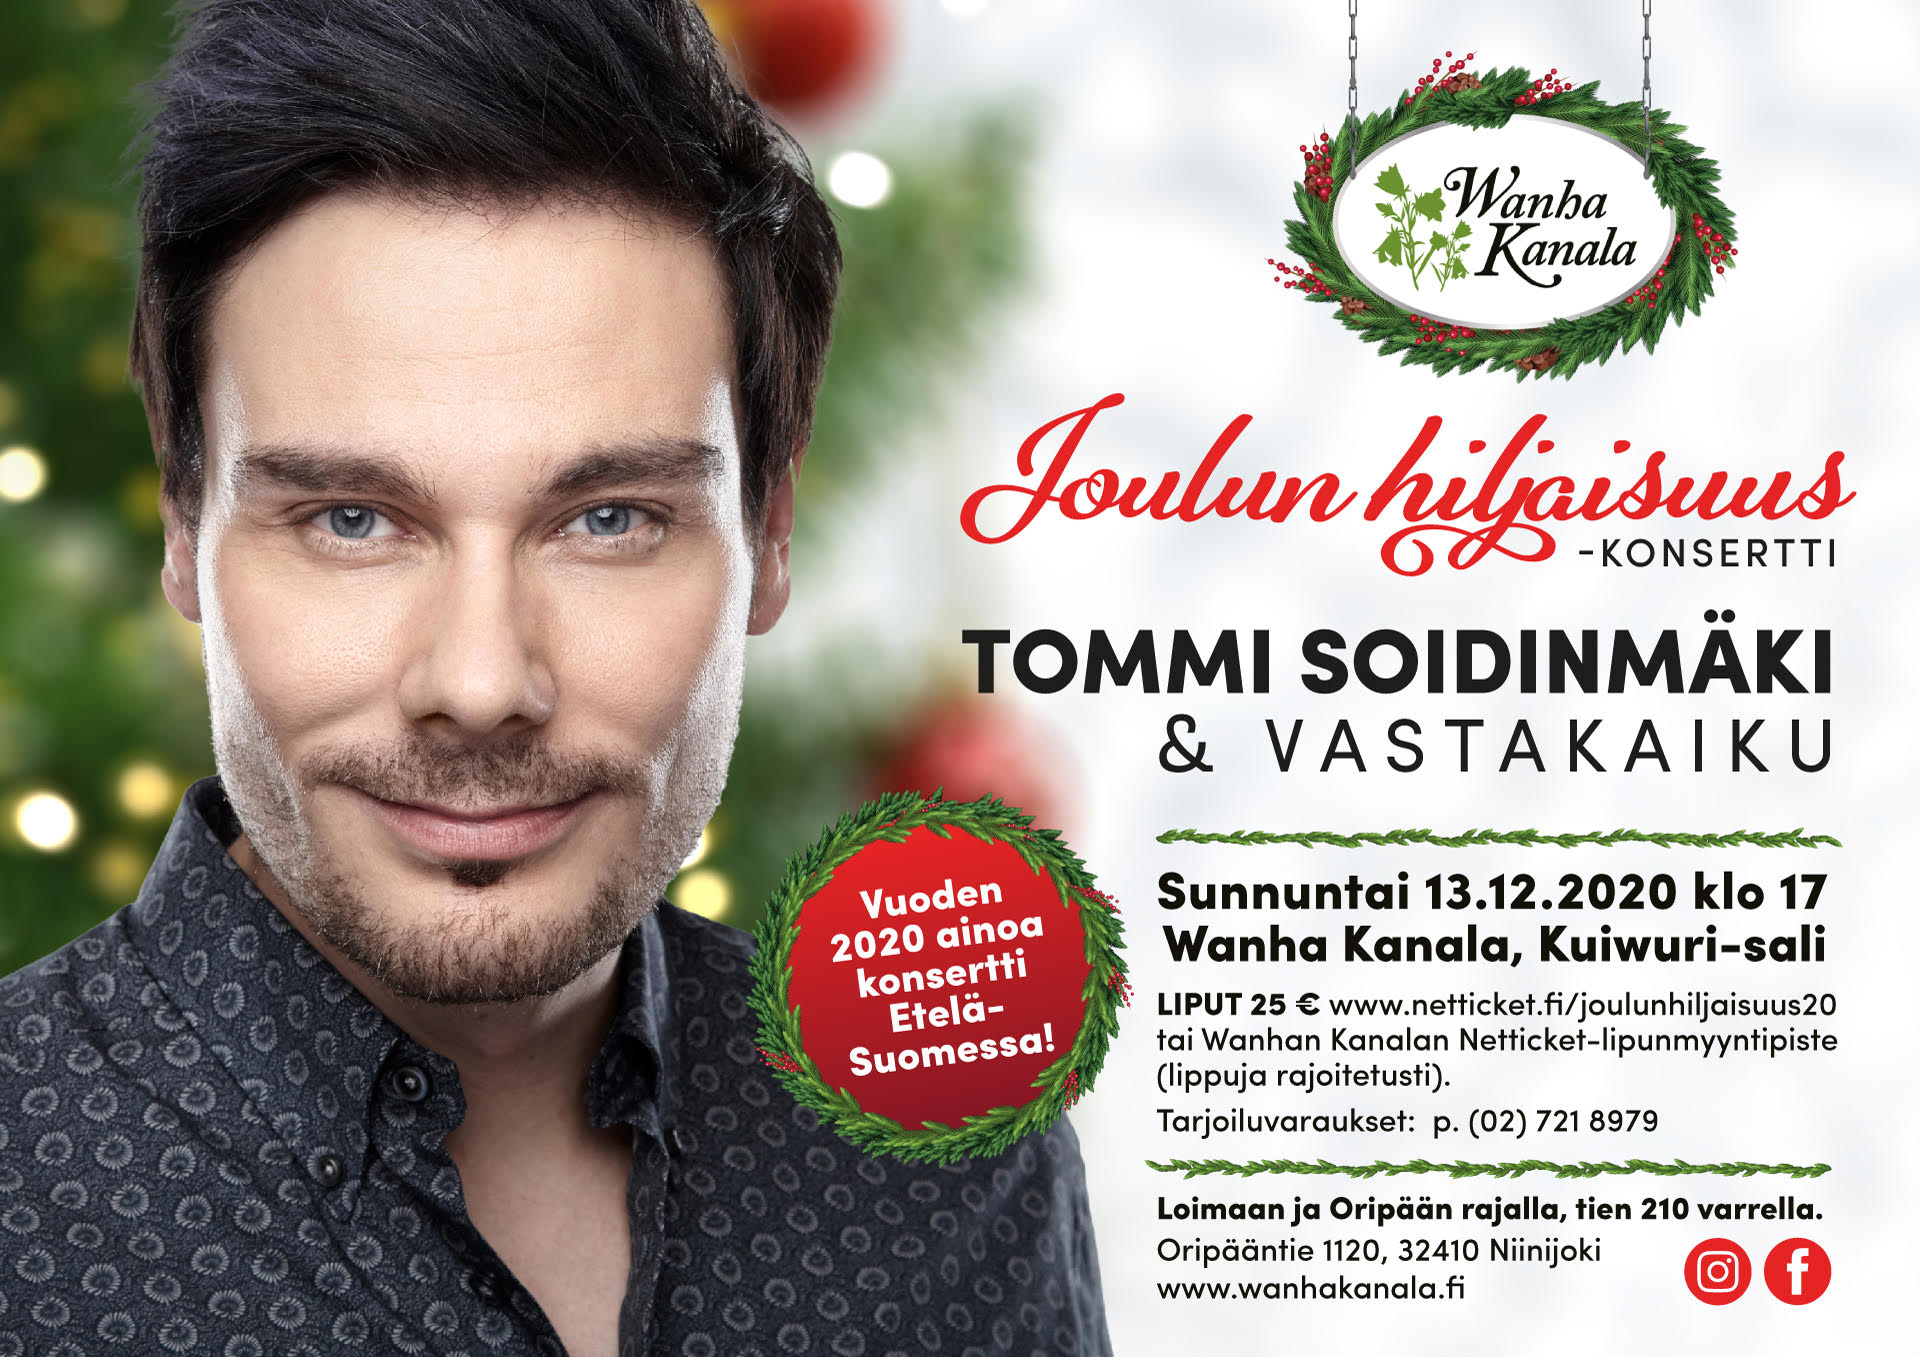 Joulun hiljaisuus -konsertti TOMMI SOIDINMÄKI & Vastakaiku